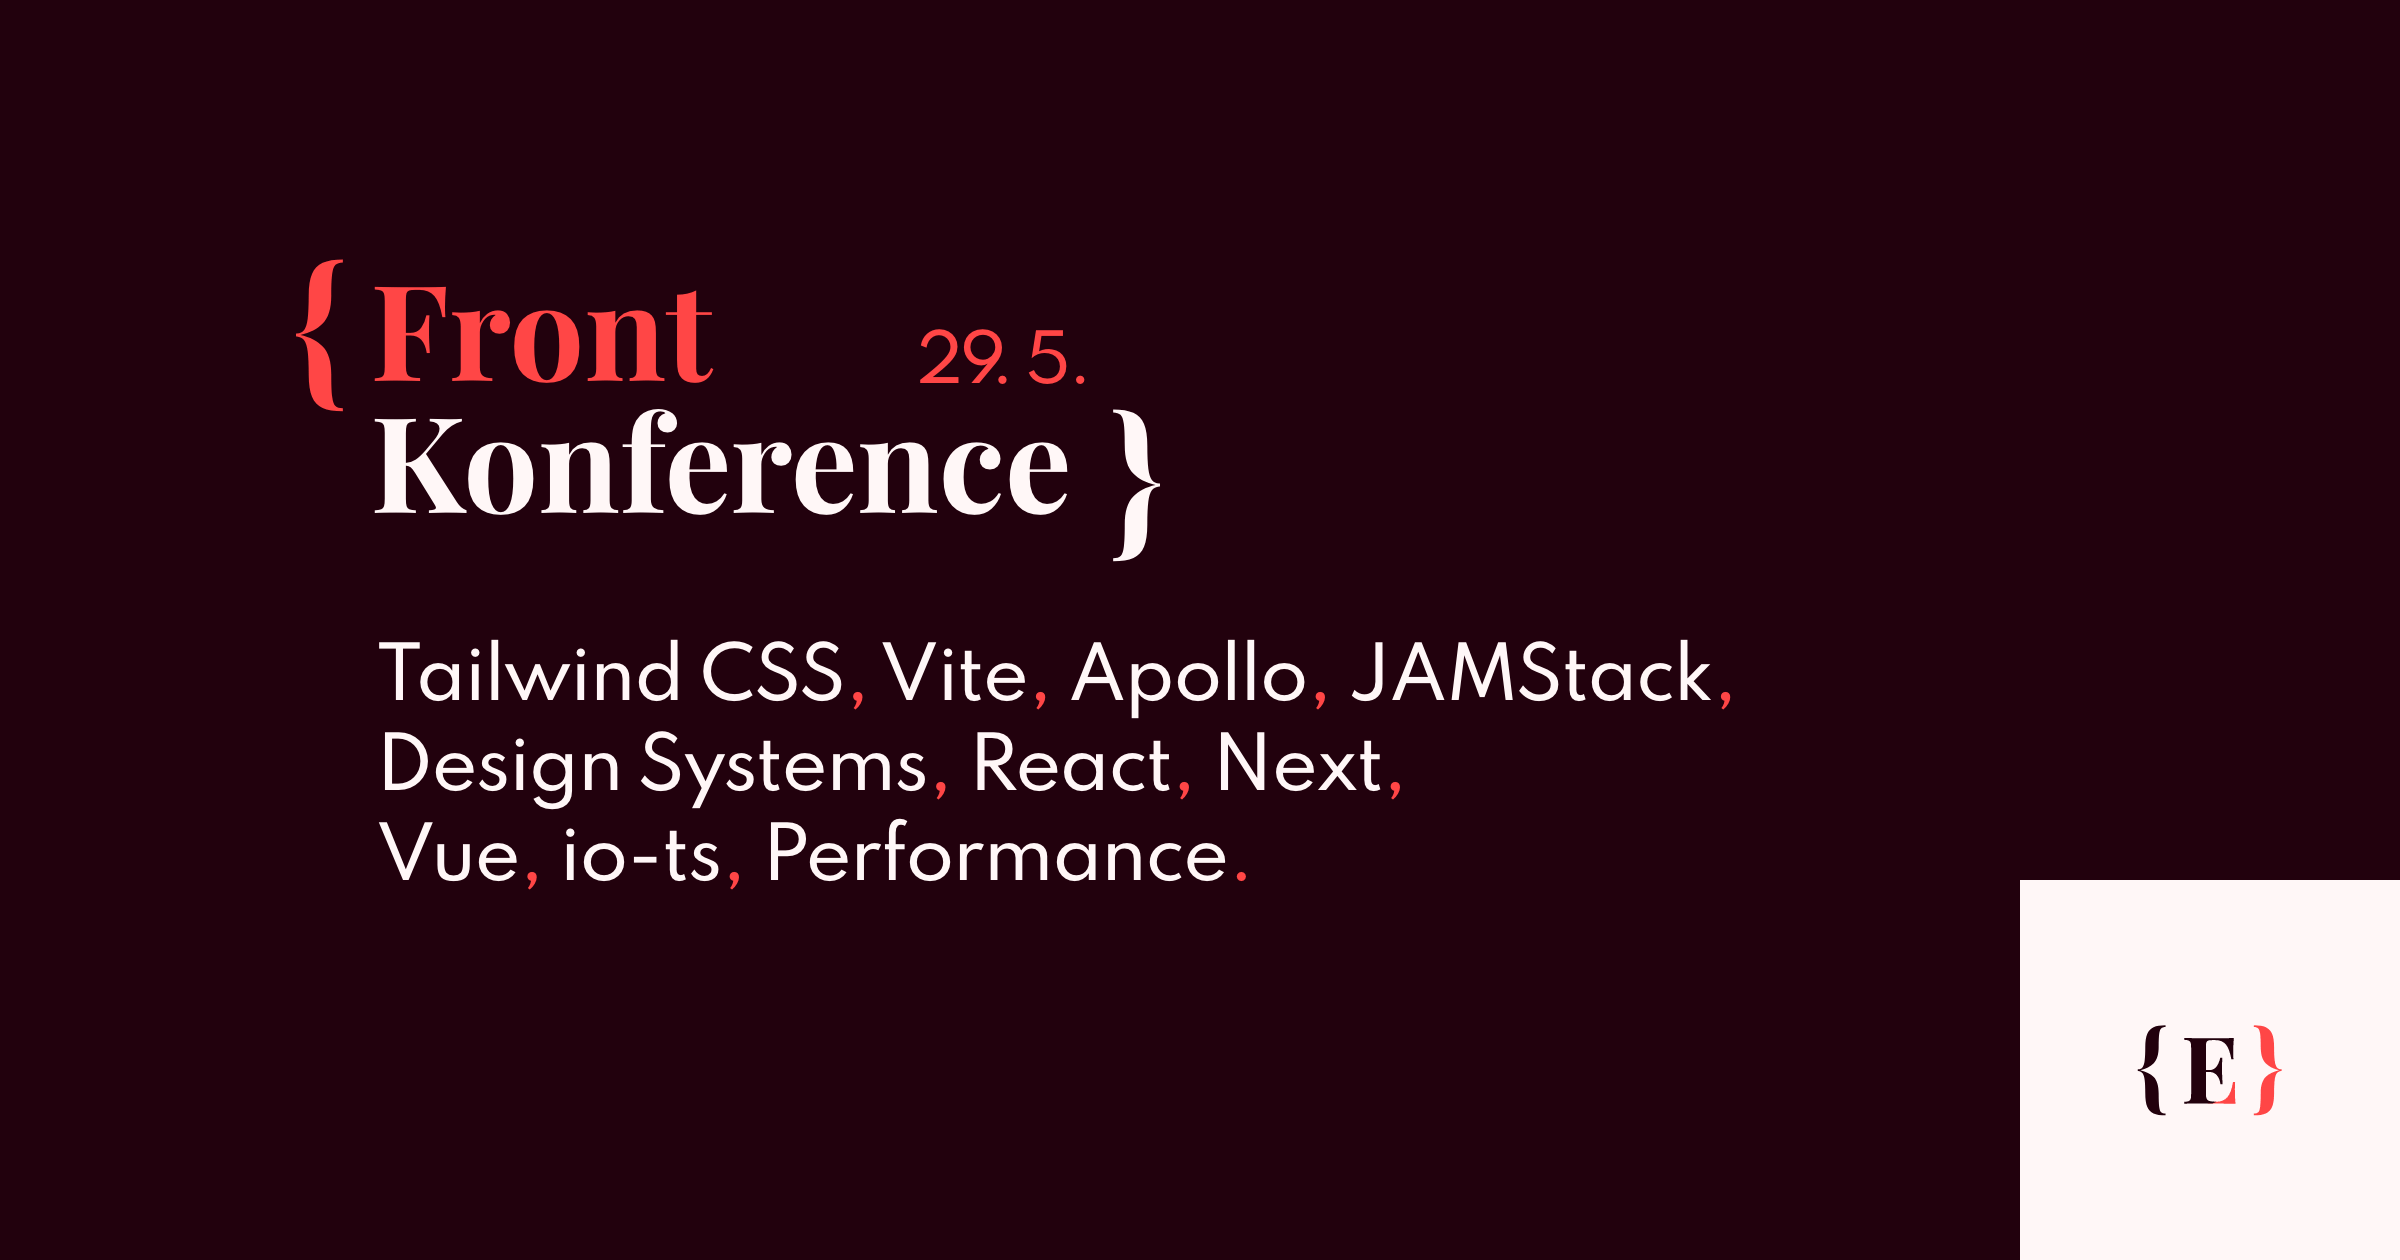 Front Konference